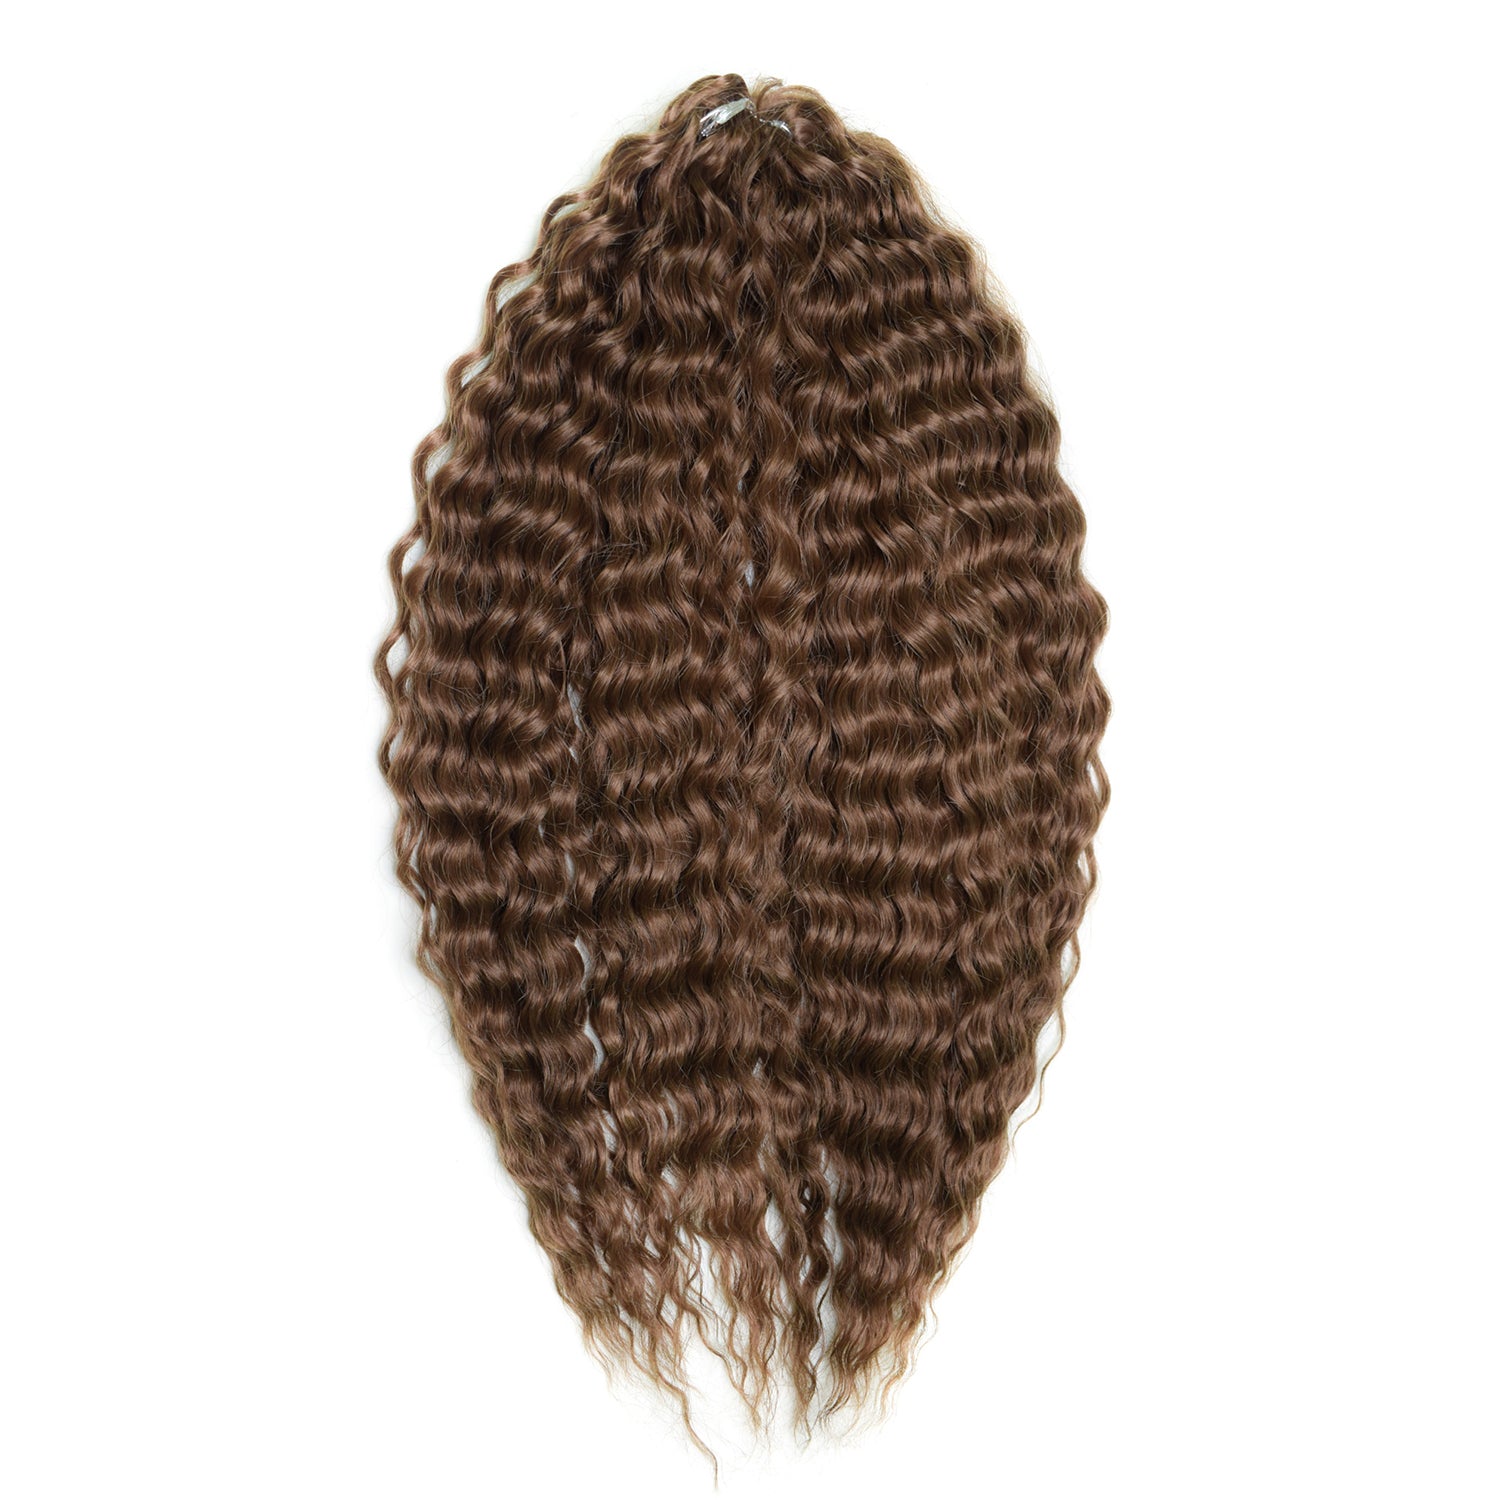 Афрокудри для плетения волос Ariel цвет 6 темно-русый 55см вес 300г